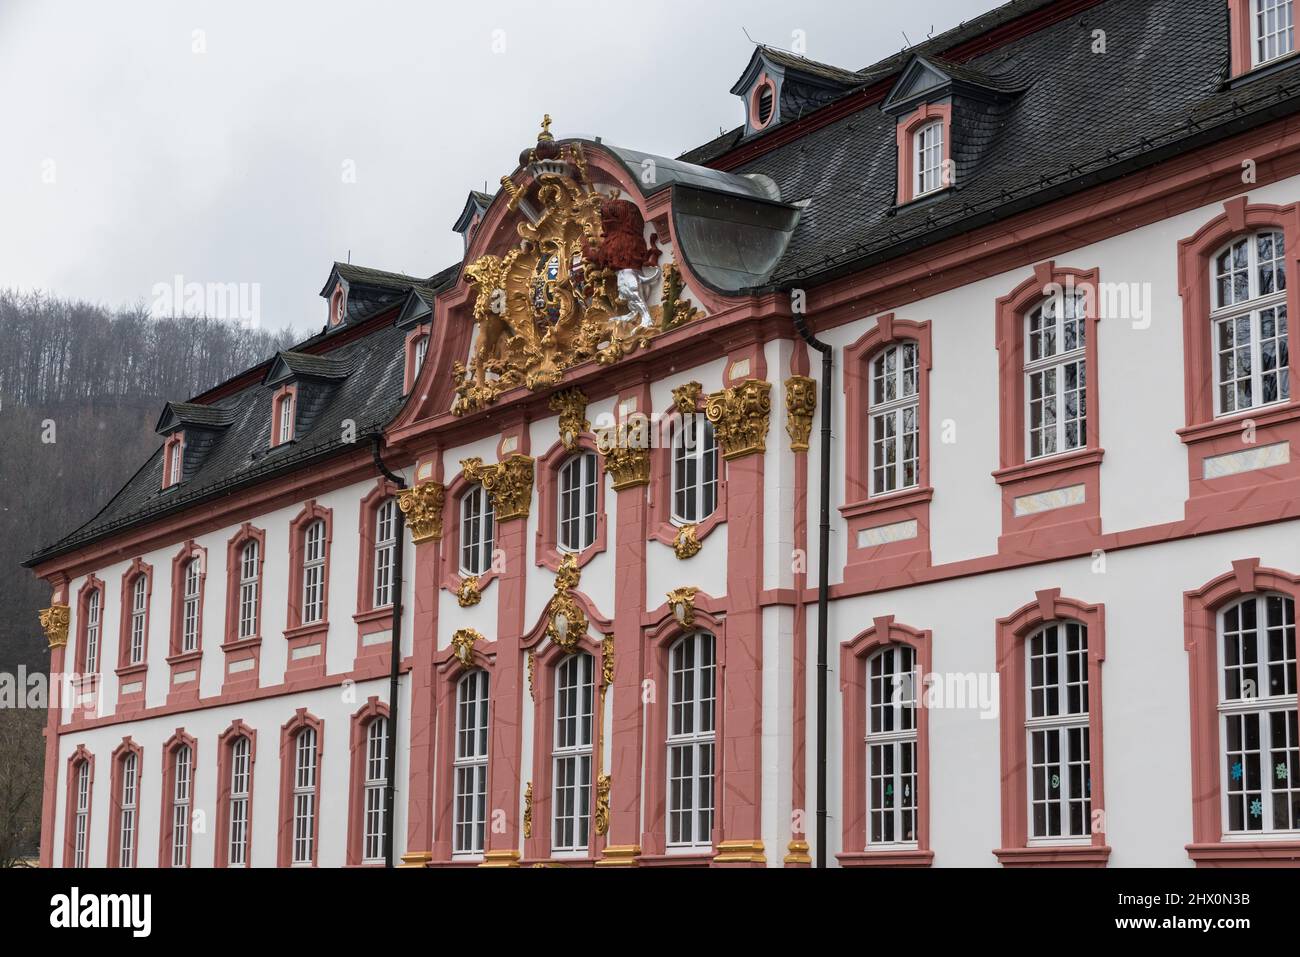 Prum, Renania-Palatinato - Germania -04 08 2019 - tipico palazzo come casa nella piazza principale del mercato in stile barocco con ornamenti dorati Foto Stock